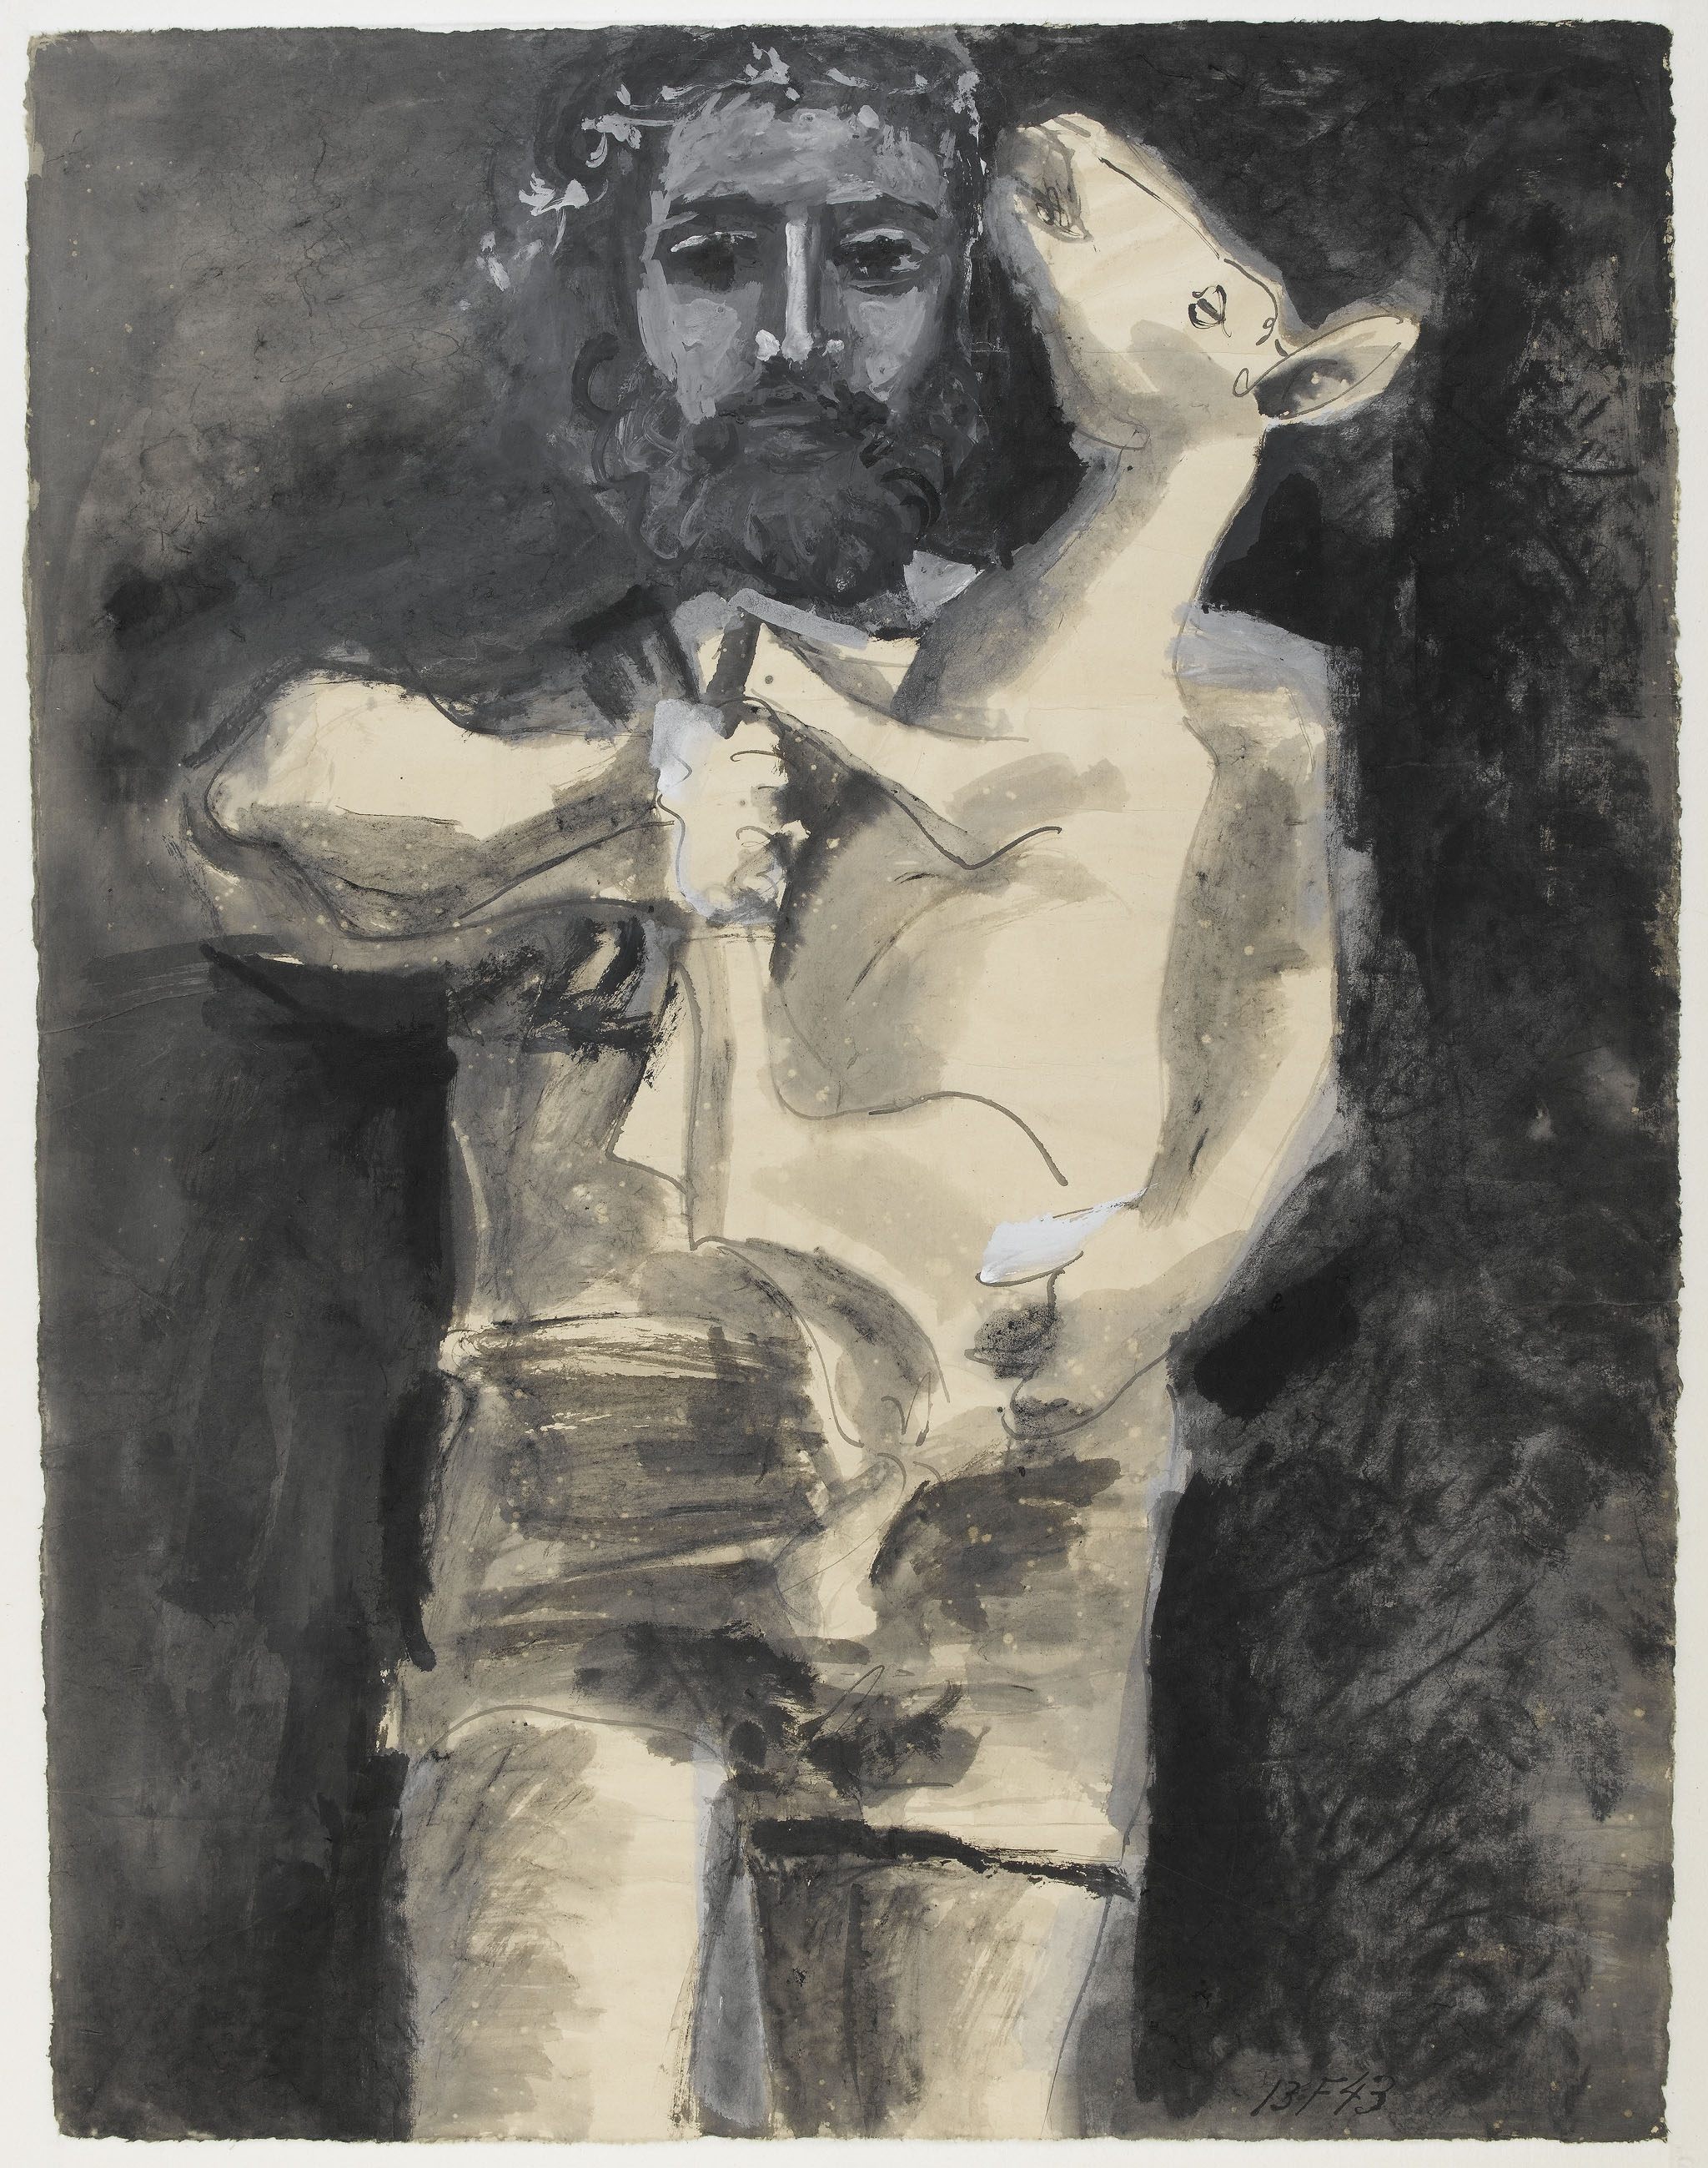 Picasso - Etude pour "L'homme au mouton" - MP1314recto - 05-519247 